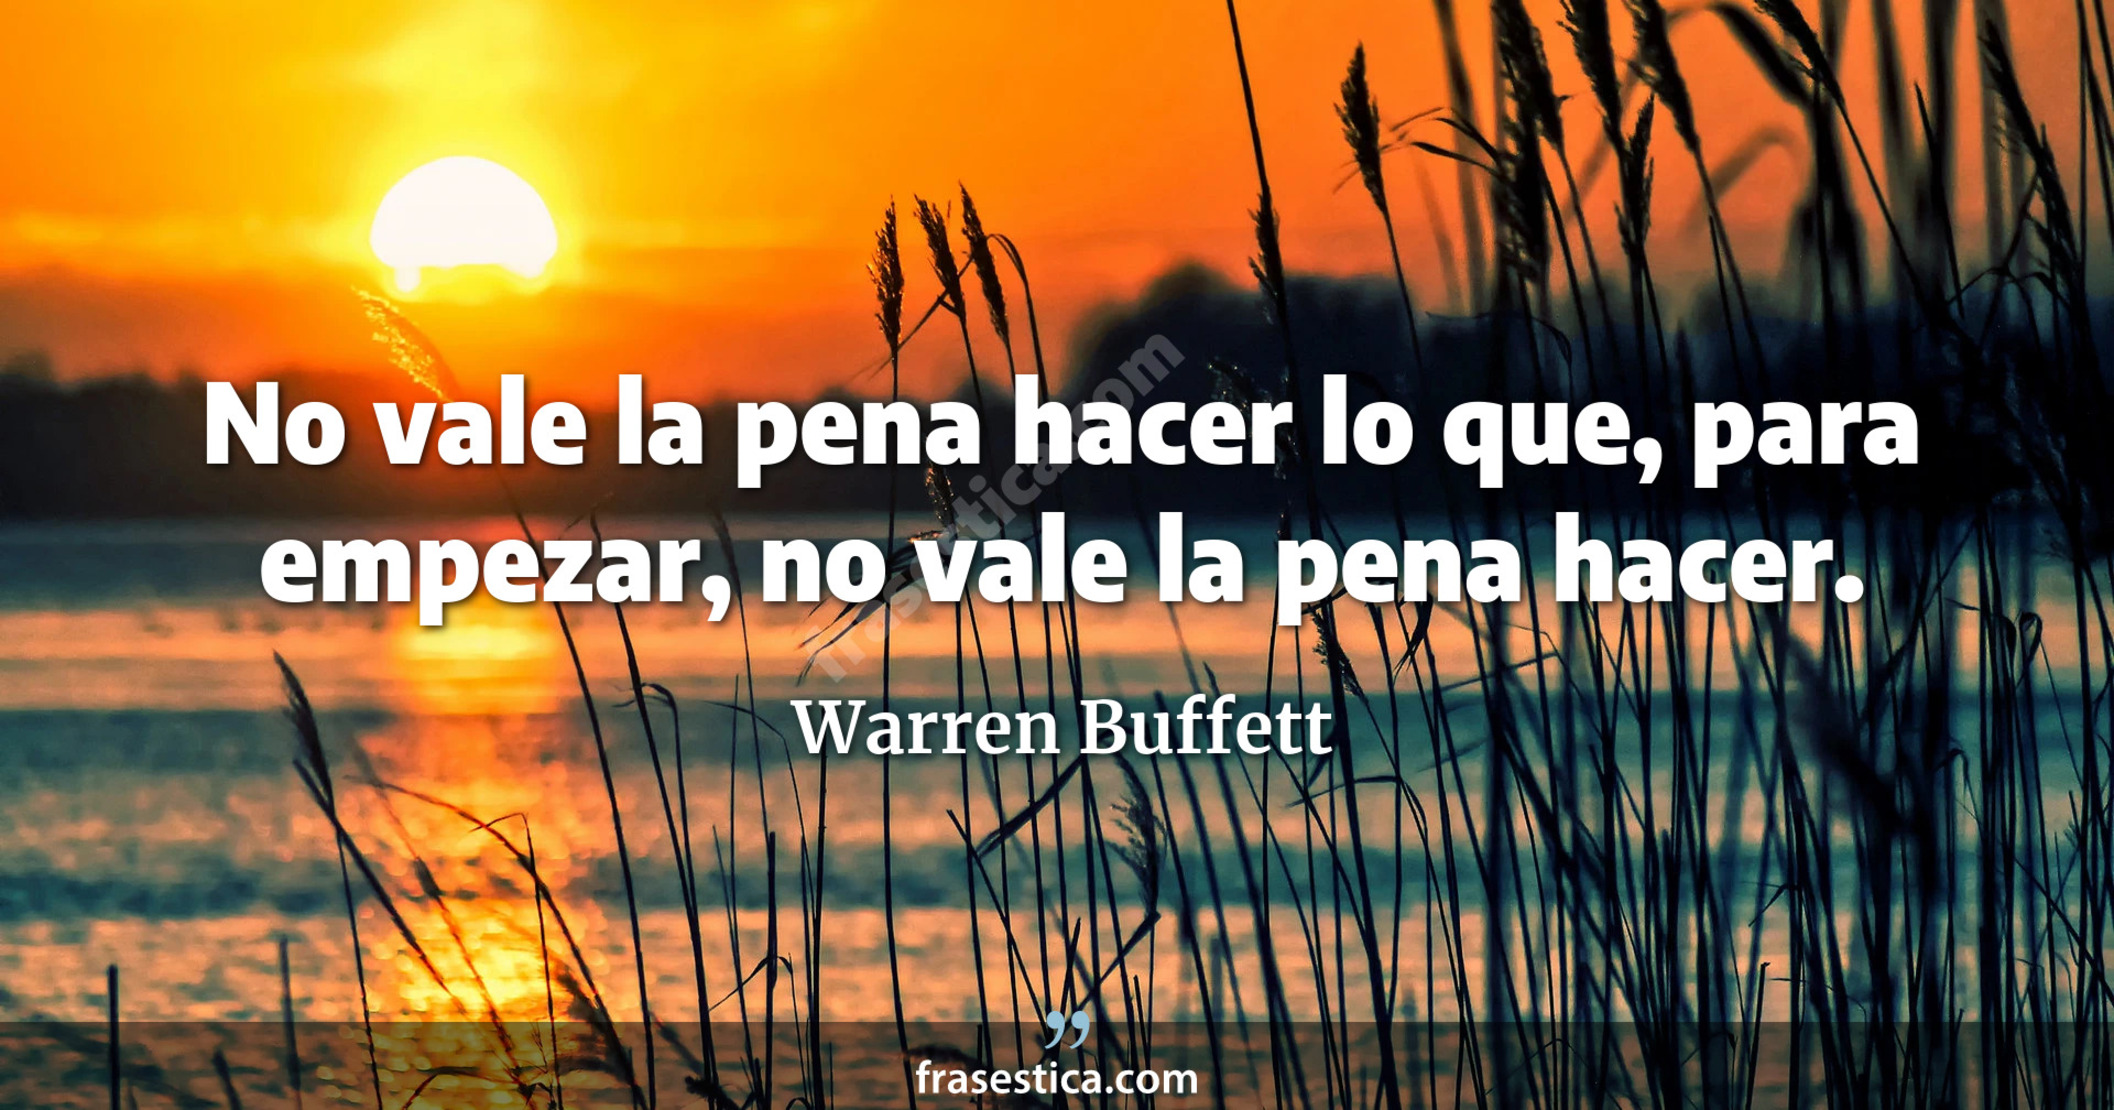 No vale la pena hacer lo que, para empezar, no vale la pena hacer. - Warren Buffett